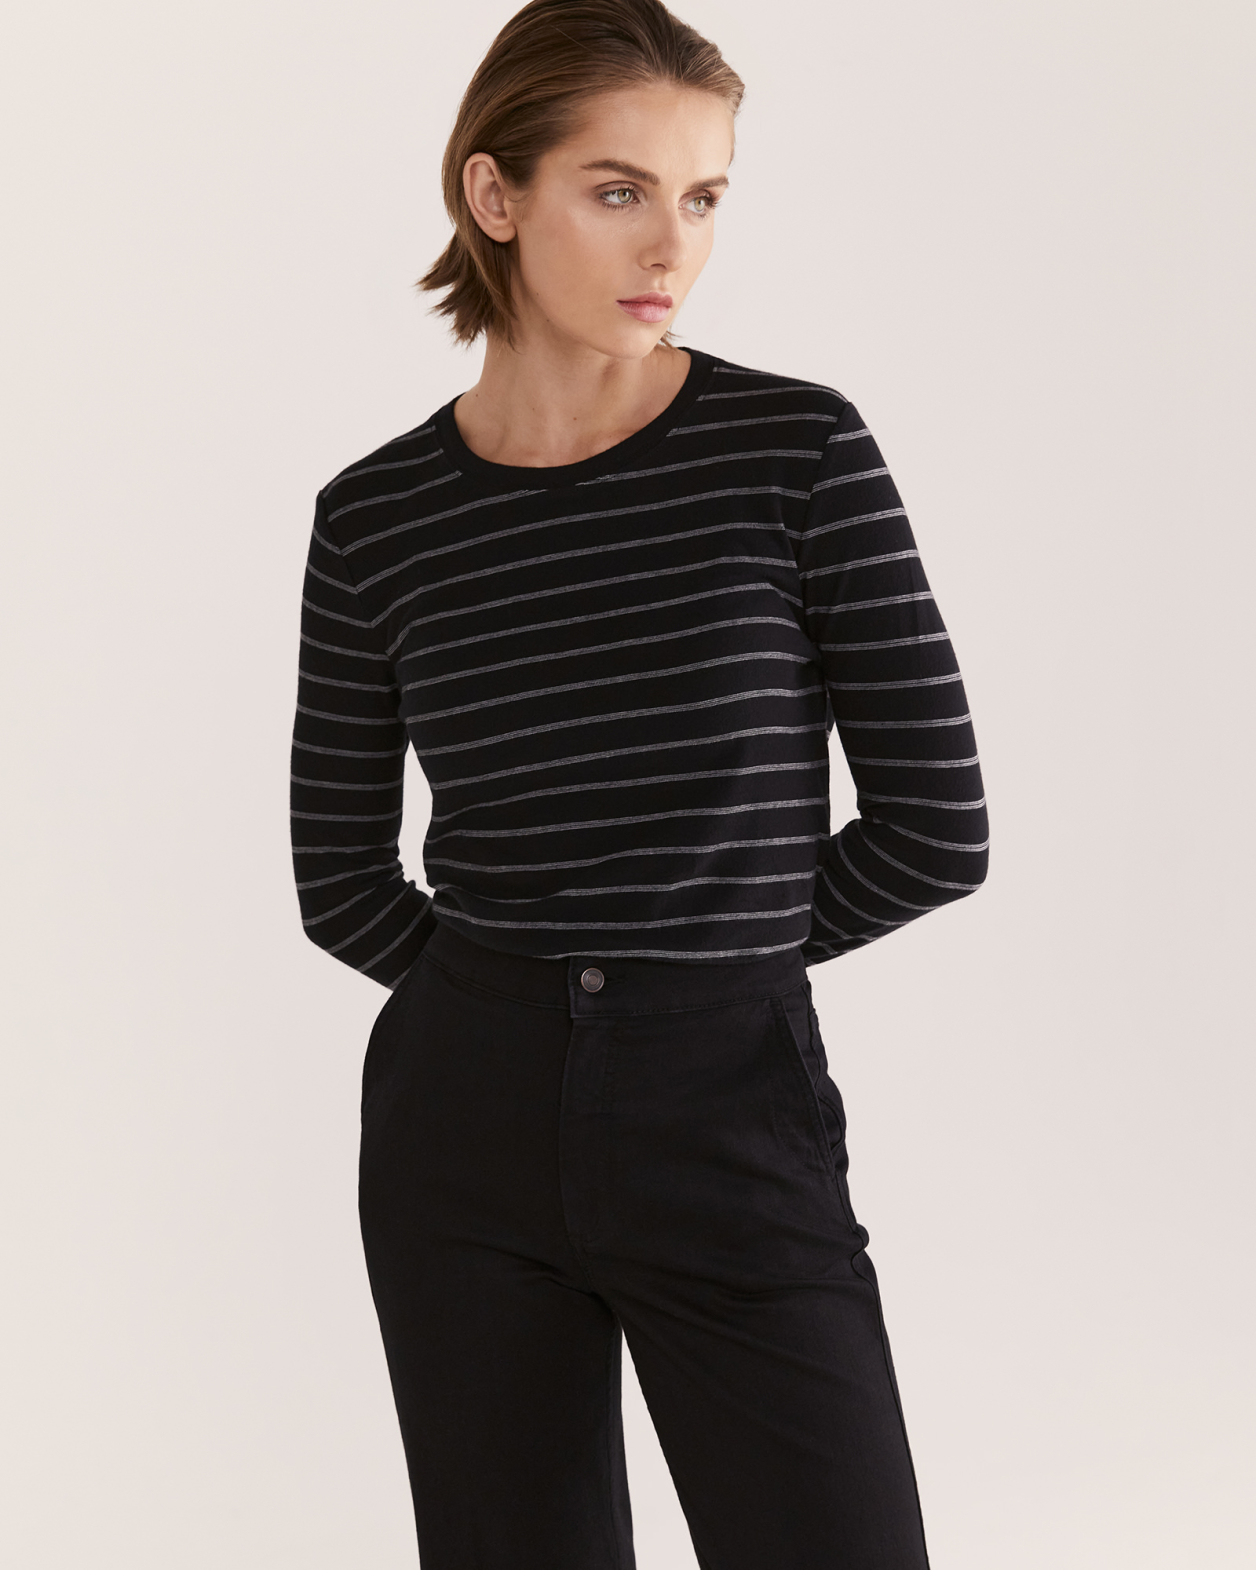 Mona Long Sleeve Stripe Top in BLACK/WHITE